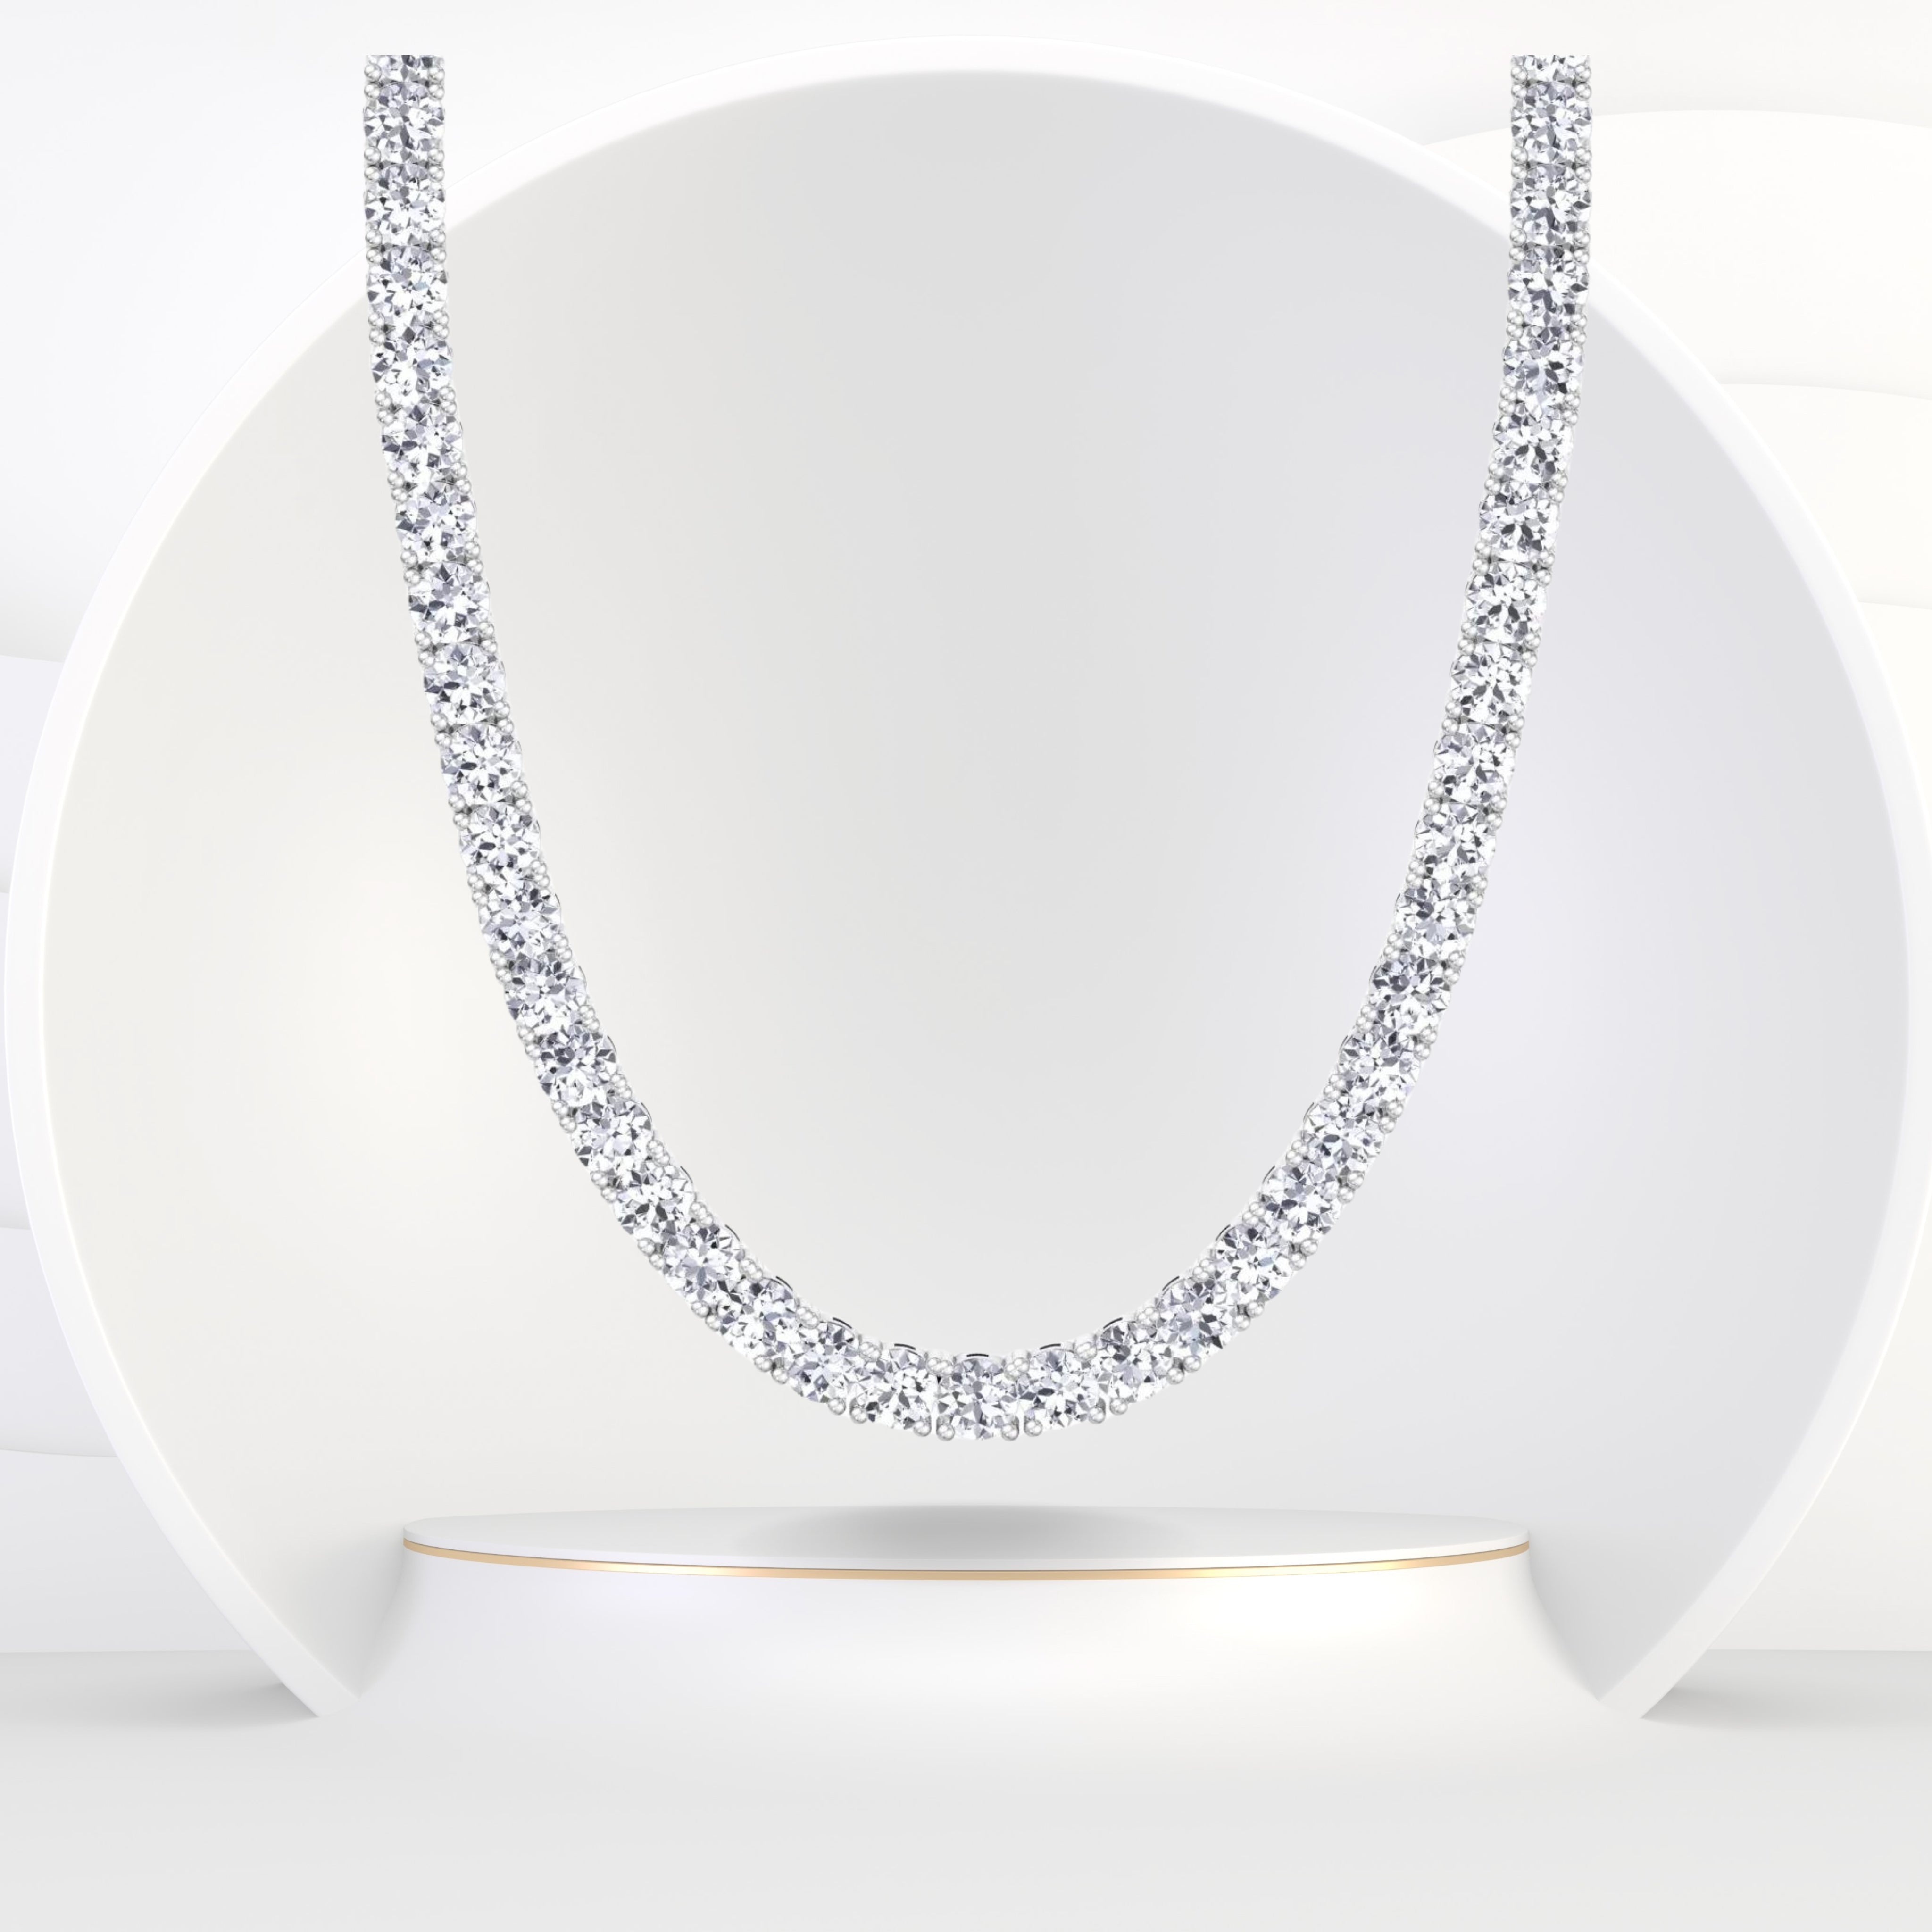 12 ct Three Diamond in Prongs Necklace 14kyg - Sarah O.